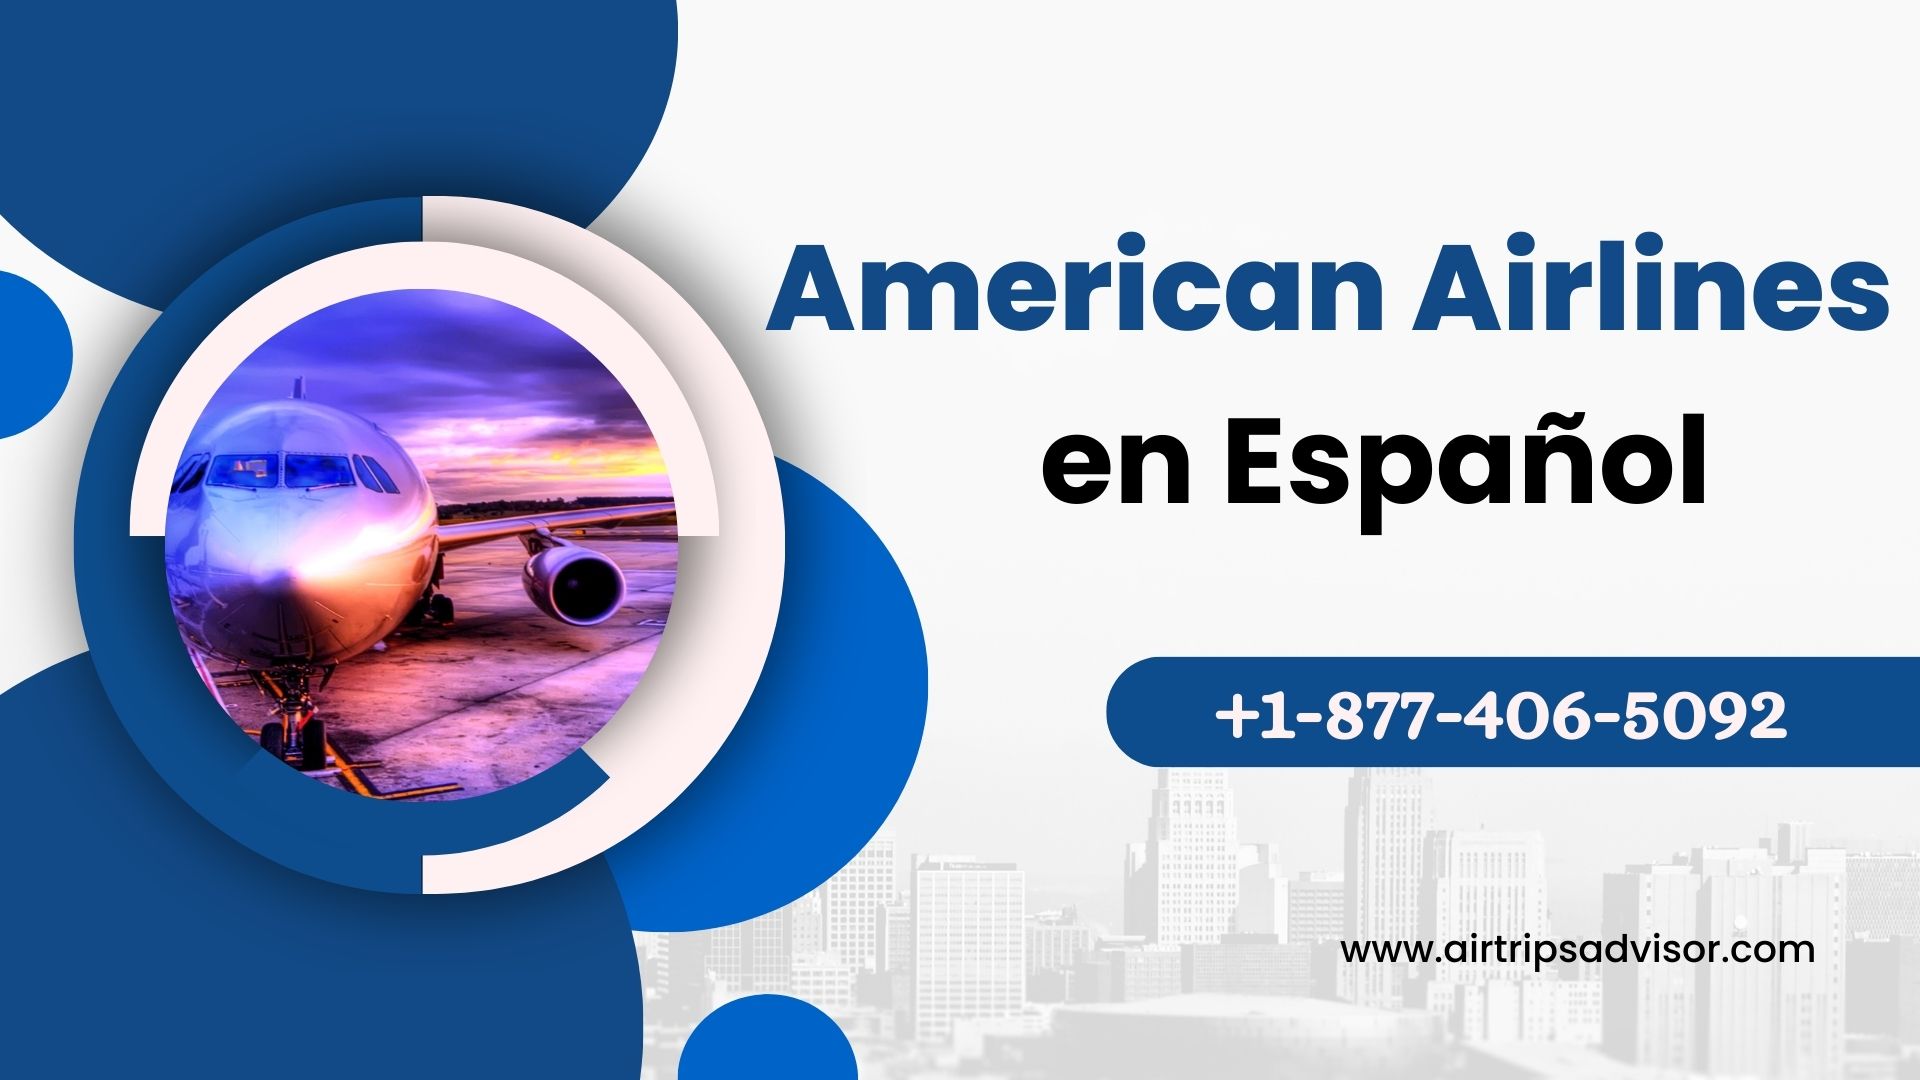 Article about Explorando destinos de American Airlines en Espanol